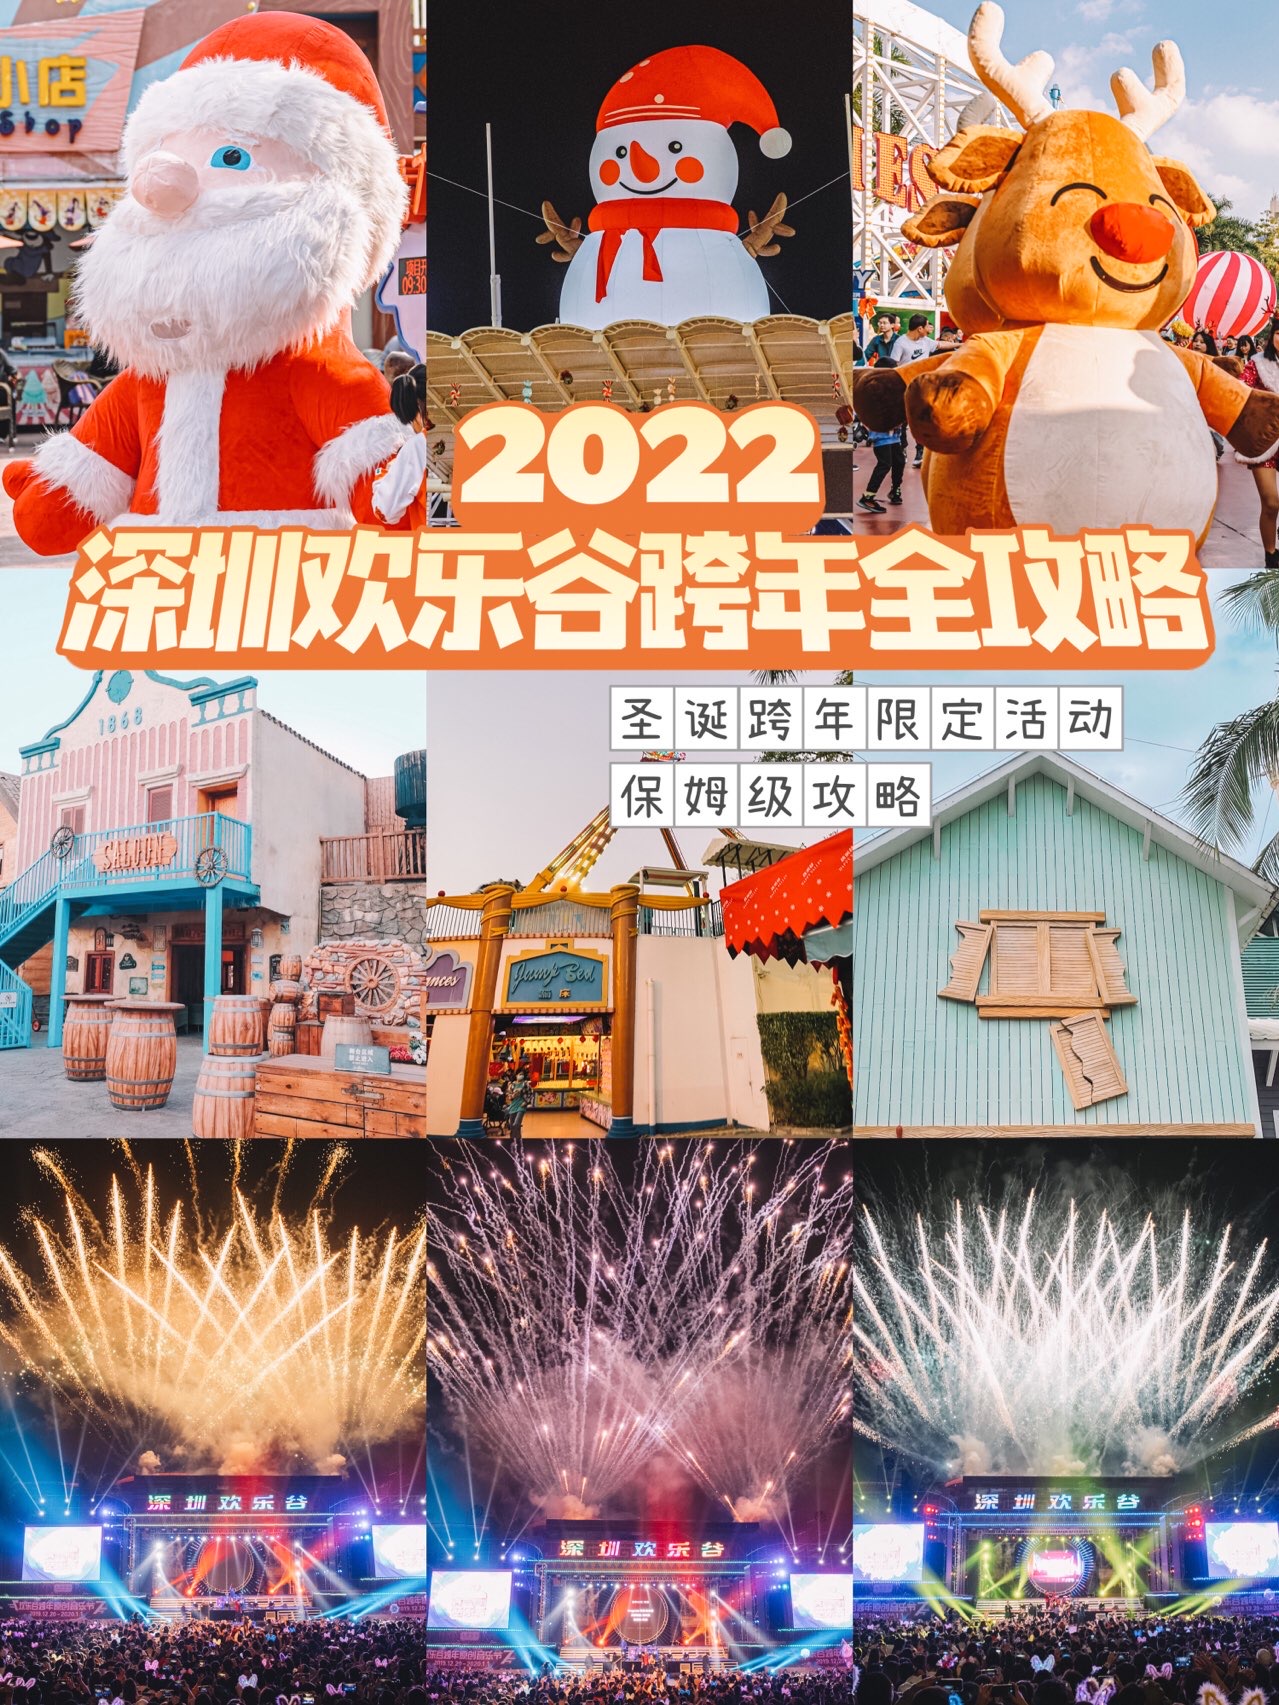 2022深圳欢乐谷跨年烟花音乐节丨情侣约会地|||😍发现深圳欢乐谷真的是又近又好玩，已经去了N次了！